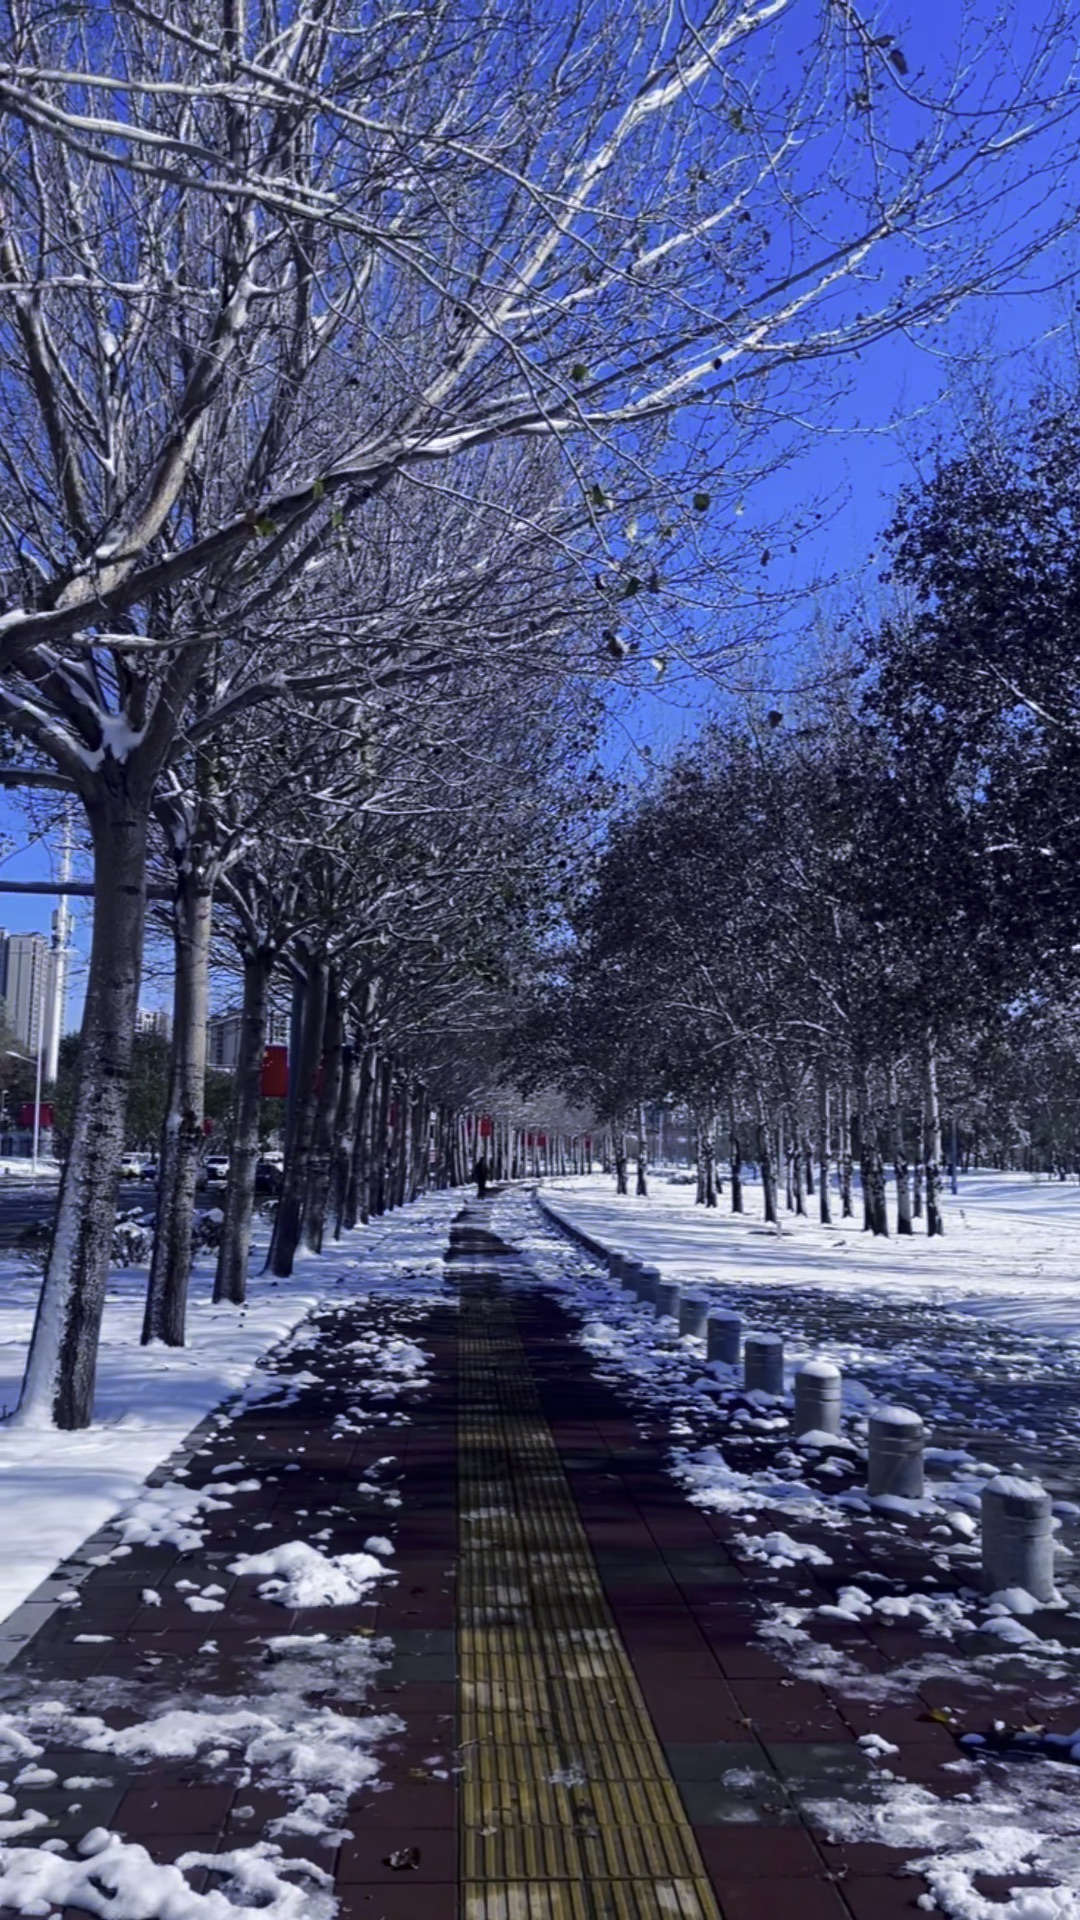 下雪天图片实景街道图片